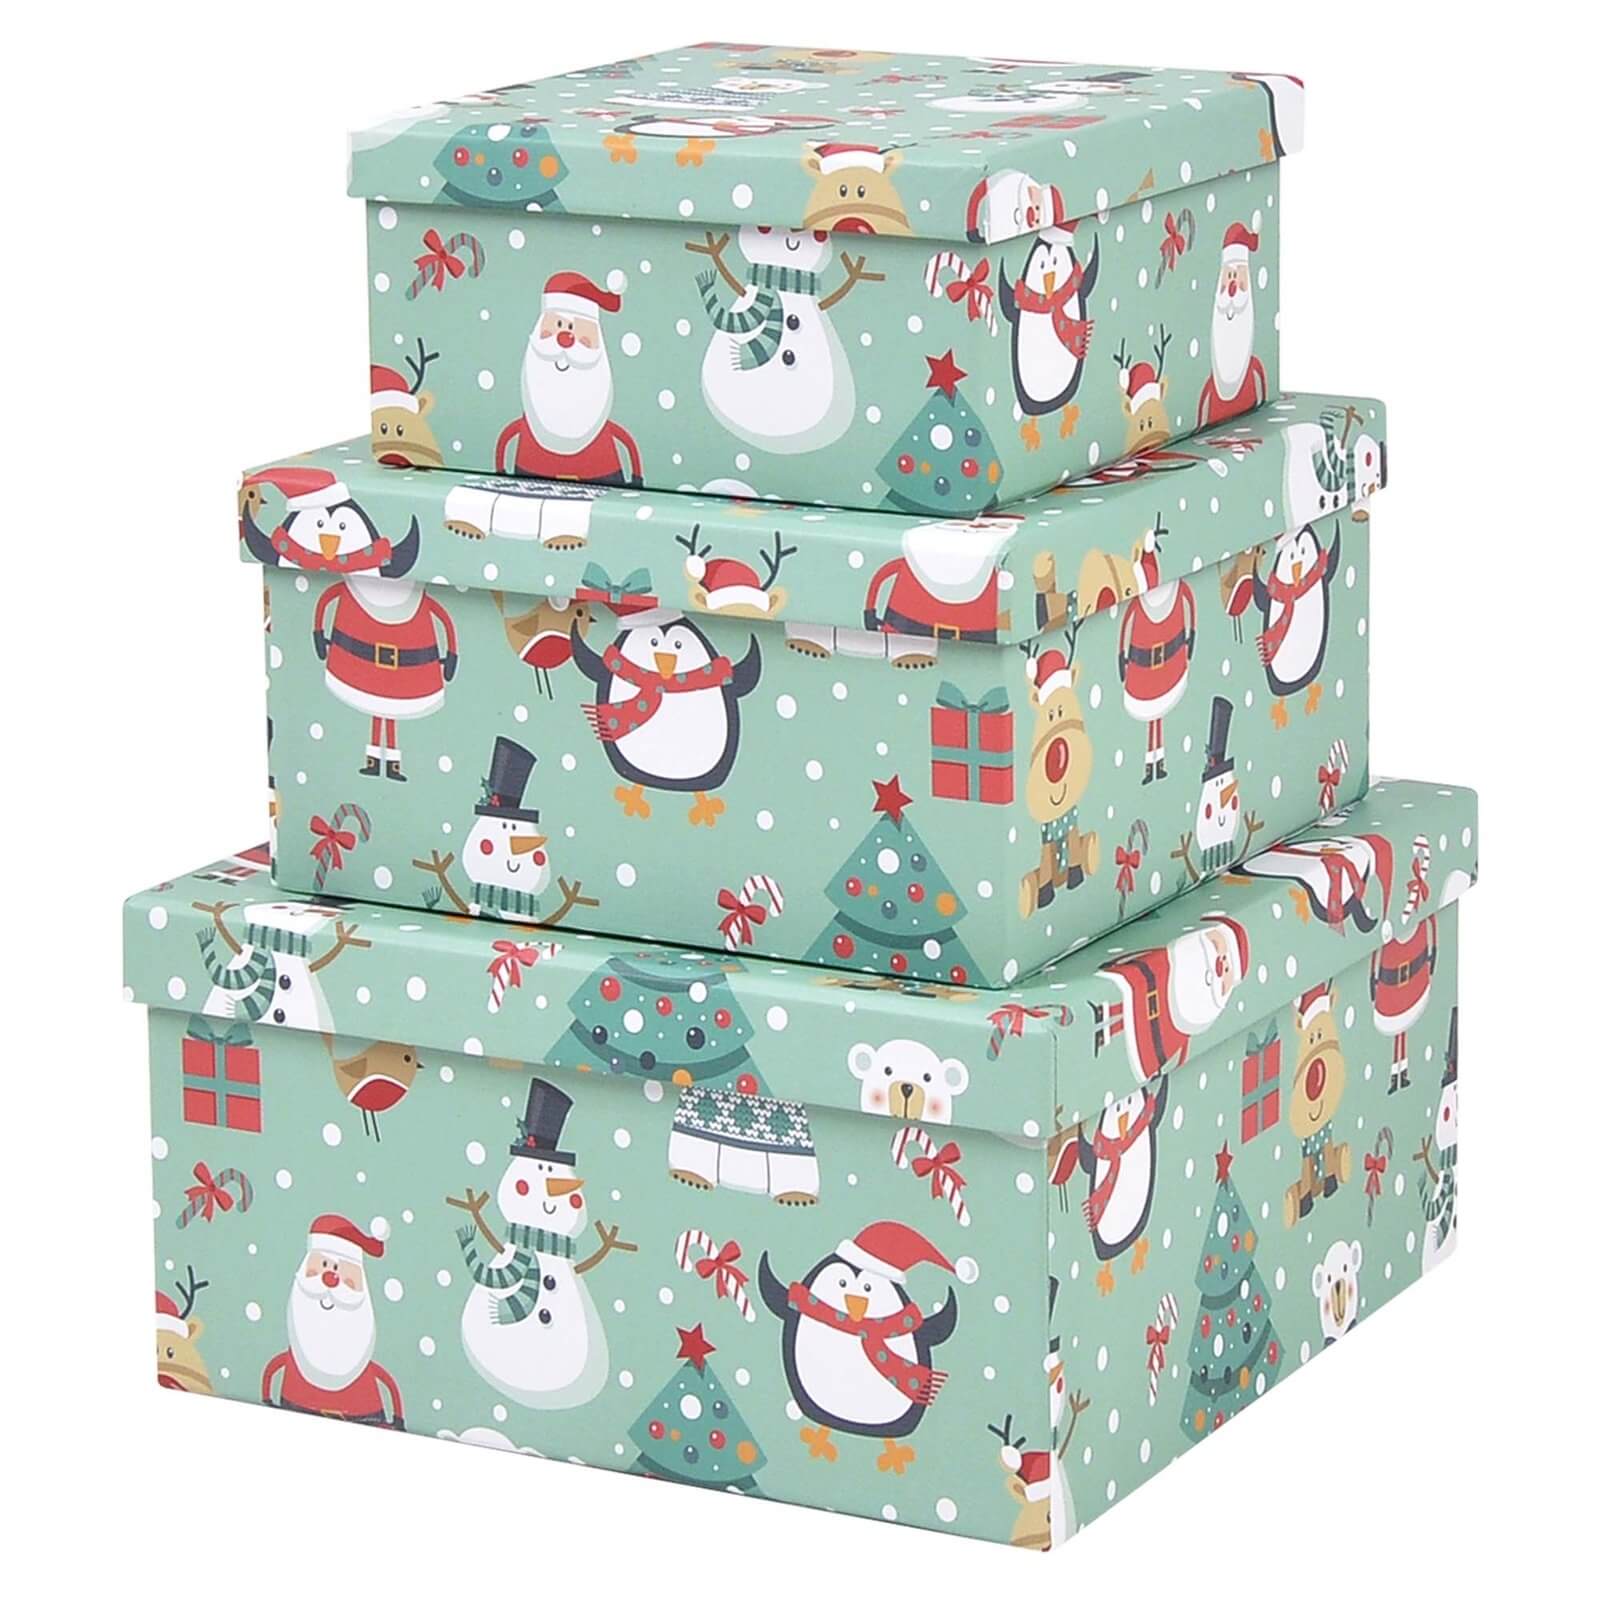 Christmas Eve Box - Father Christmas